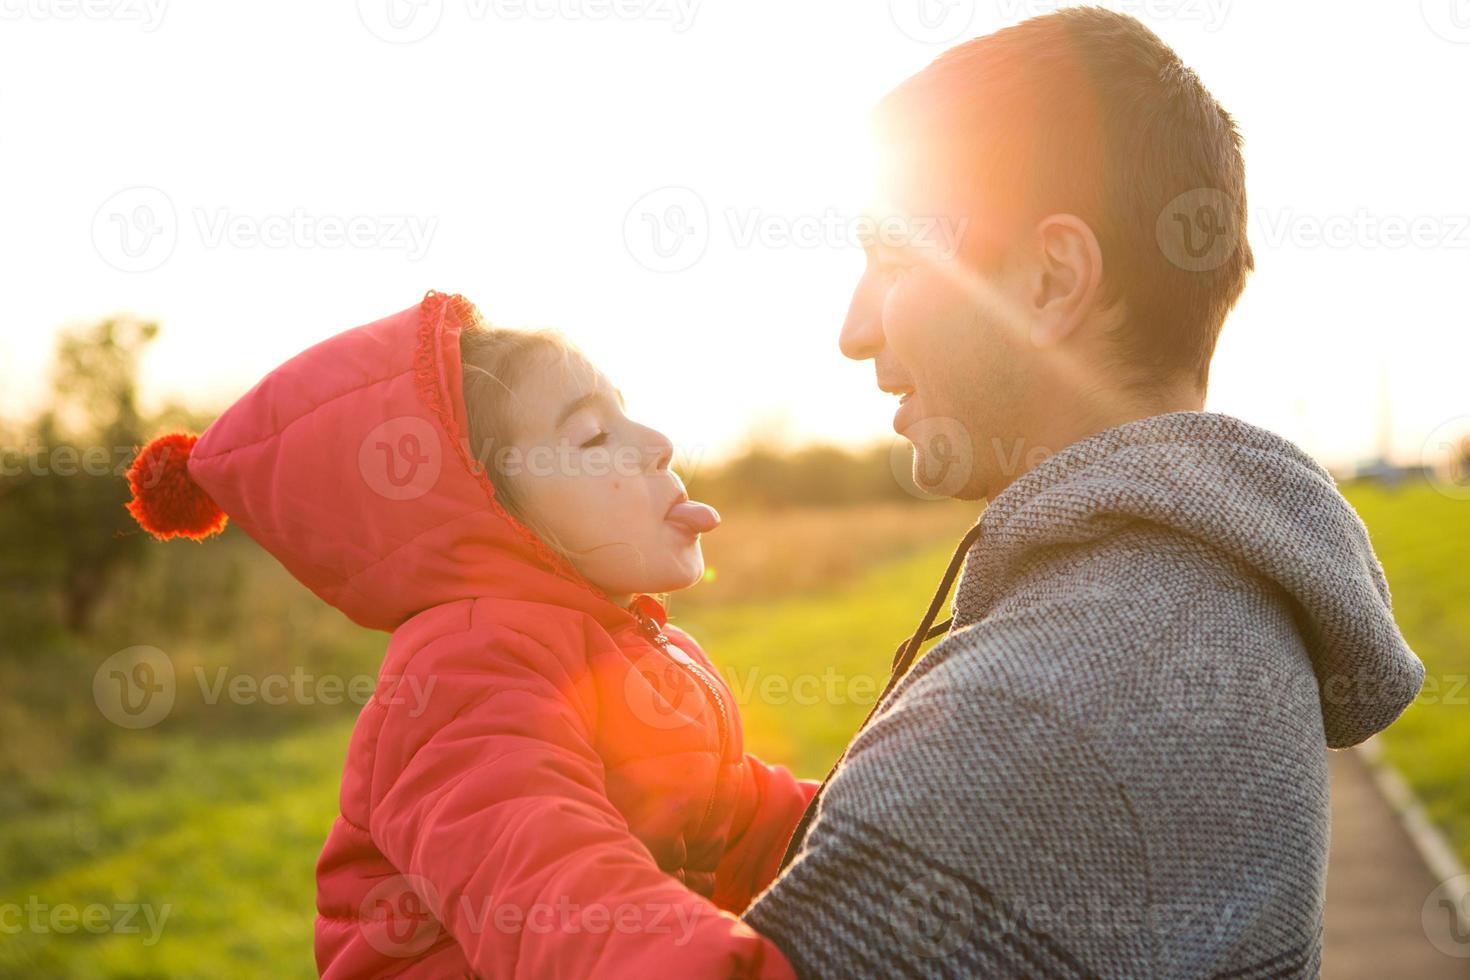 petite fille en veste rouge avec une capuche embrasse et tire la langue de son père, sourit. famille heureuse, émotions des enfants, fête des pères, rayons lumineux du soleil, apparence caucasienne. espace pour le texte. photo